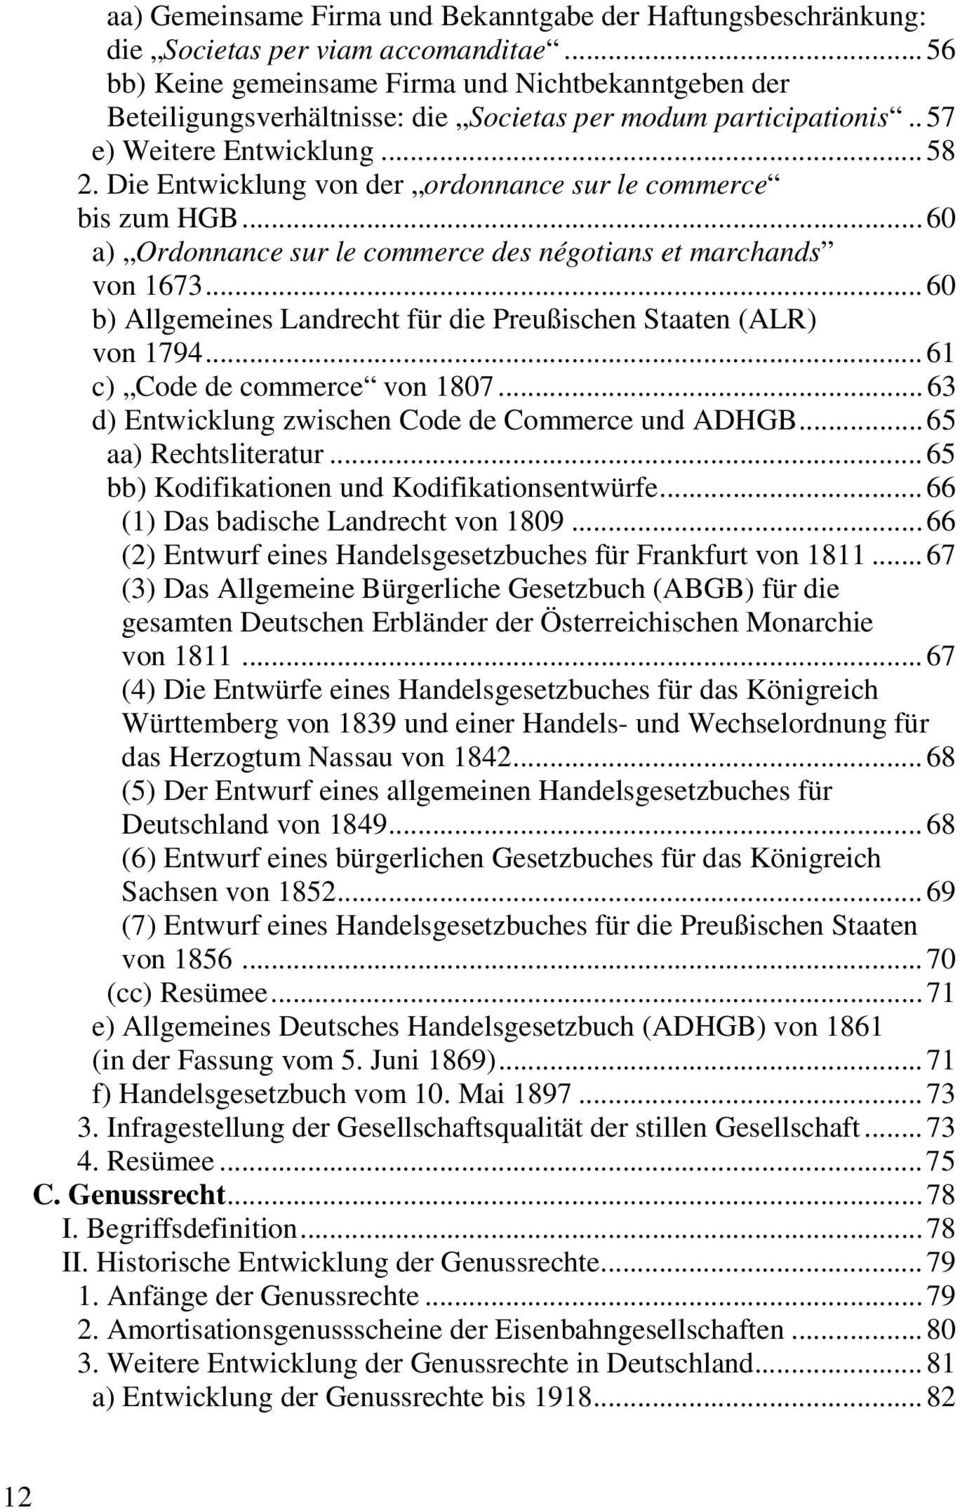 Die Entwicklung von der ordonnance sur le commerce bis zum HGB...60 a) Ordonnance sur le commerce des négotians et marchands von 1673.